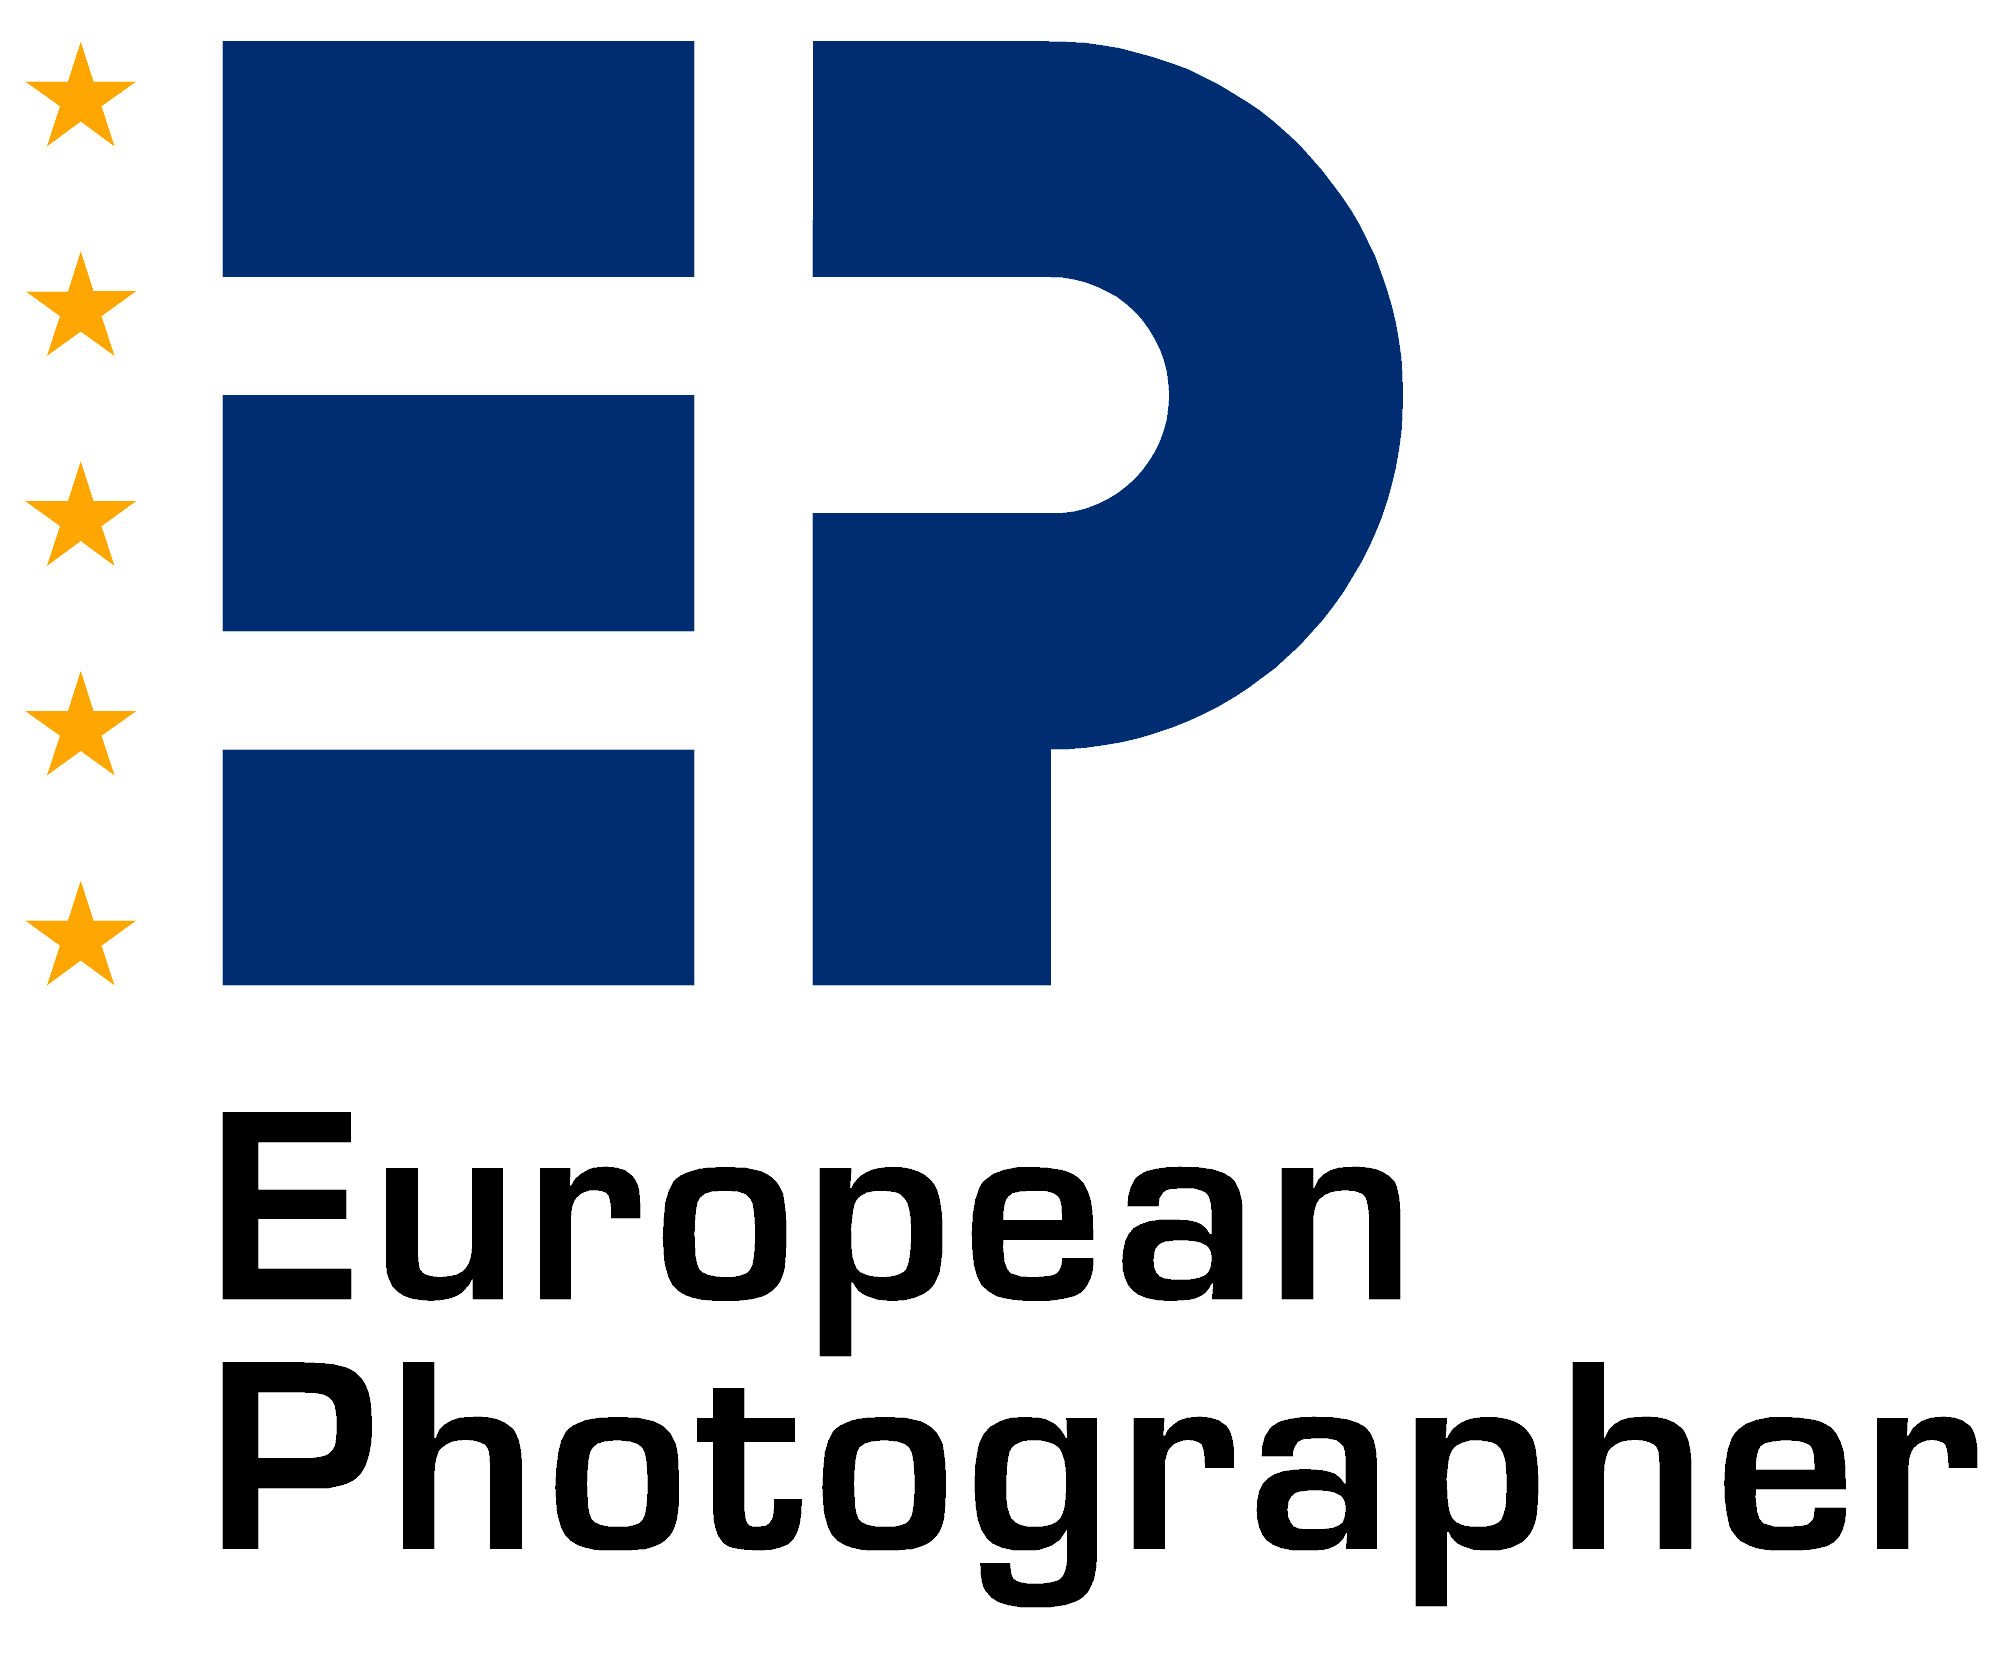 De EP-kwalificatie heeft tot doel het erkennen van de beroepsbekwaamheid en de professionele standaard van beroepsfotografen.